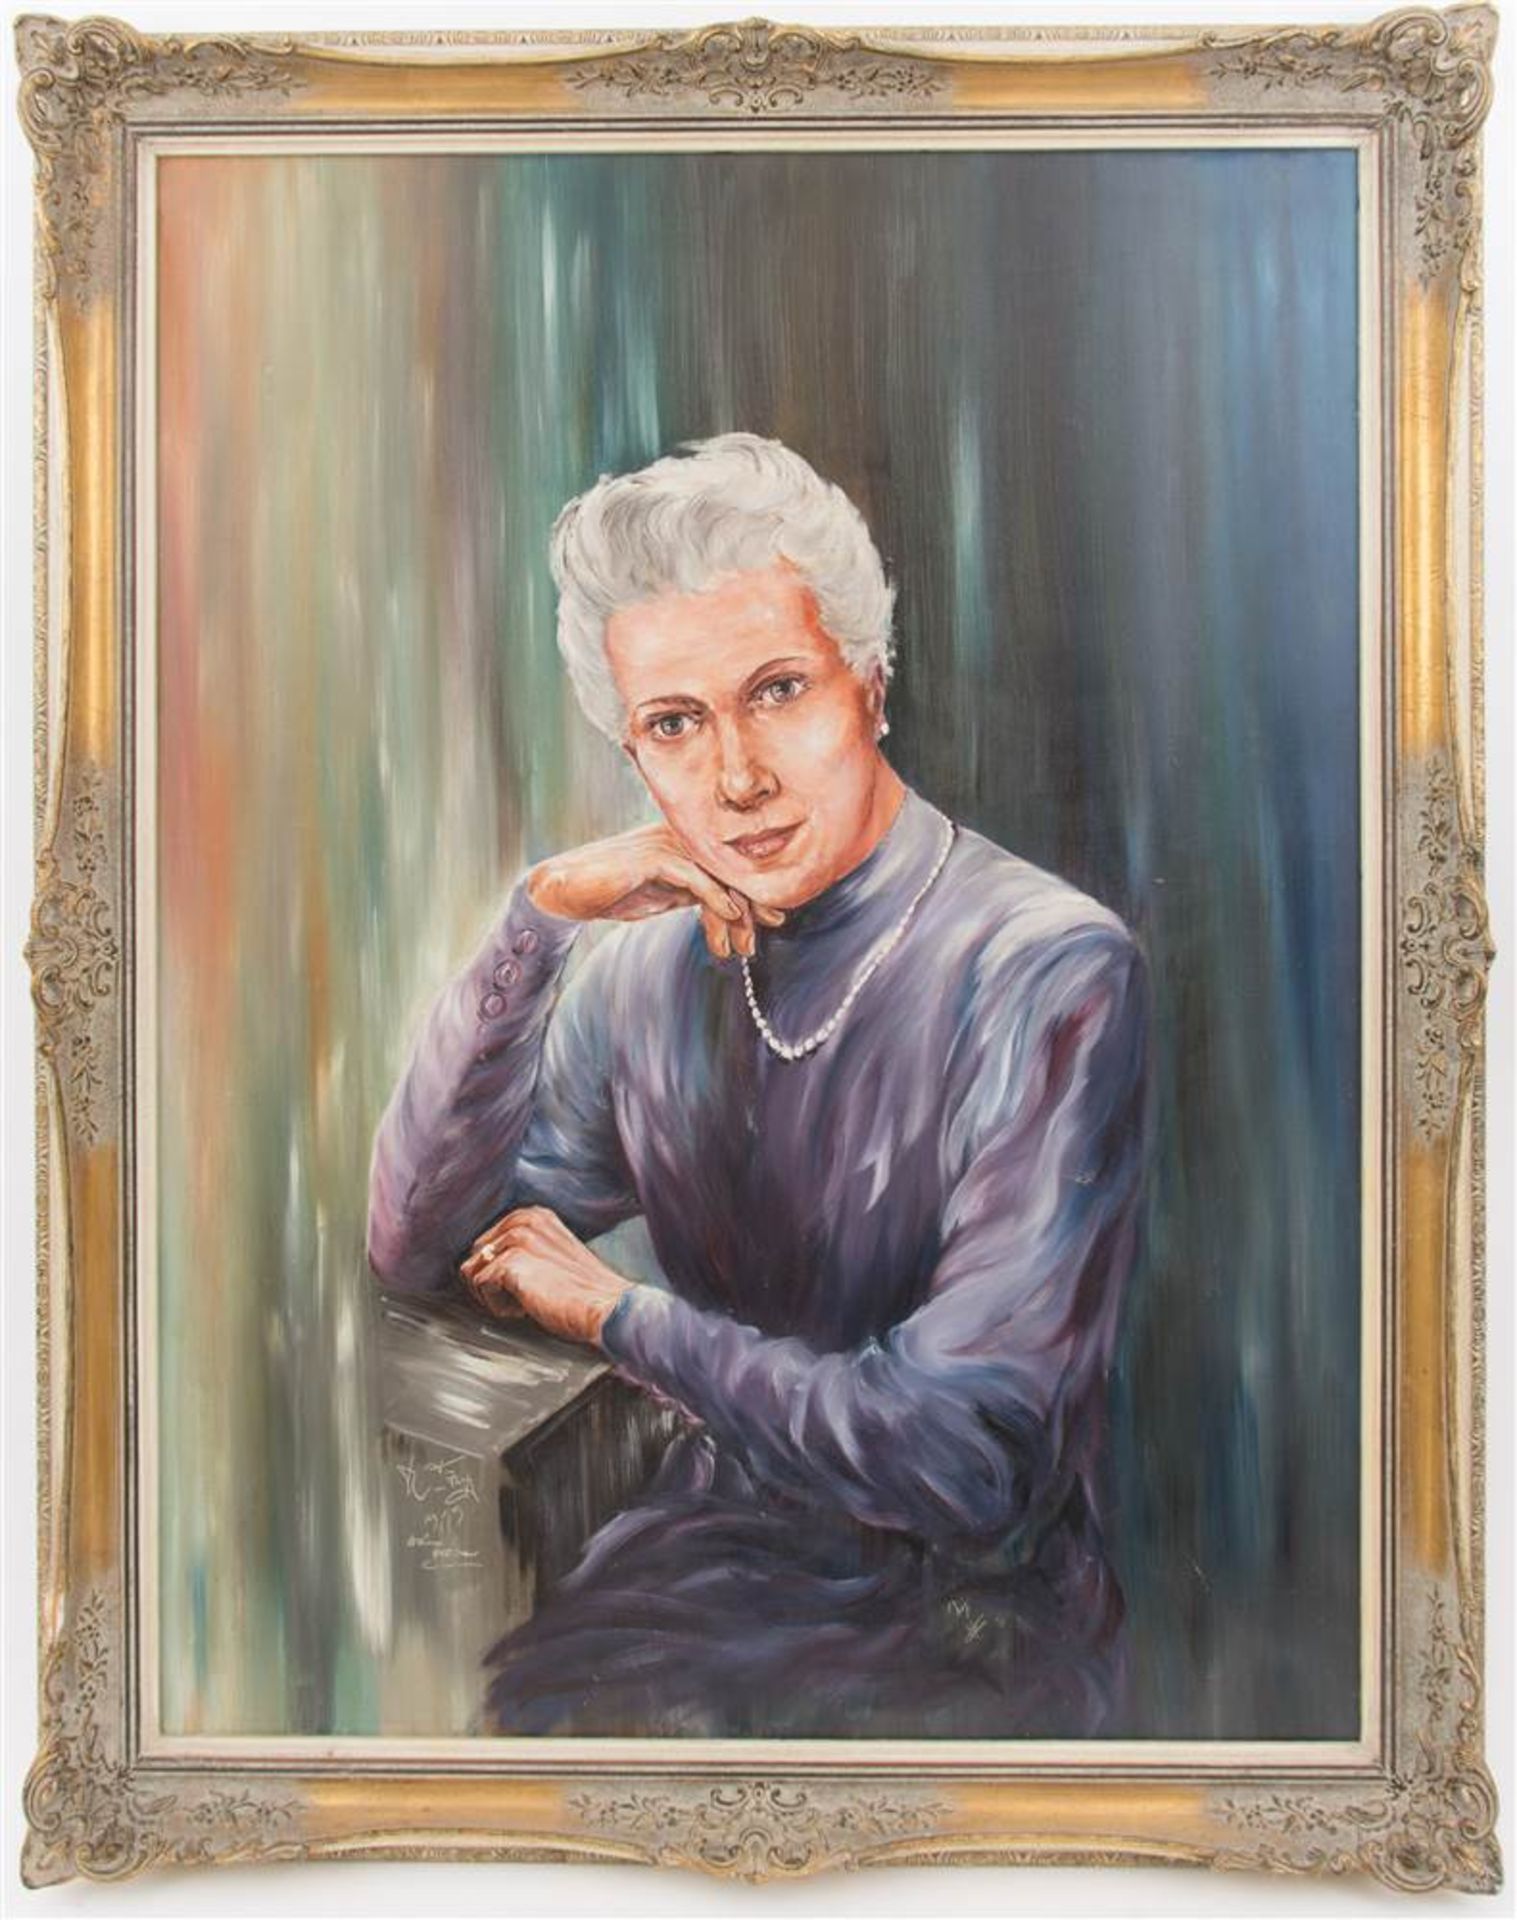 UNBEKANNTER KÜNSTLER. "Porträt einer alten Dame", Öl auf Leinwand, unleserlich sign. dat. 1959 Maße: